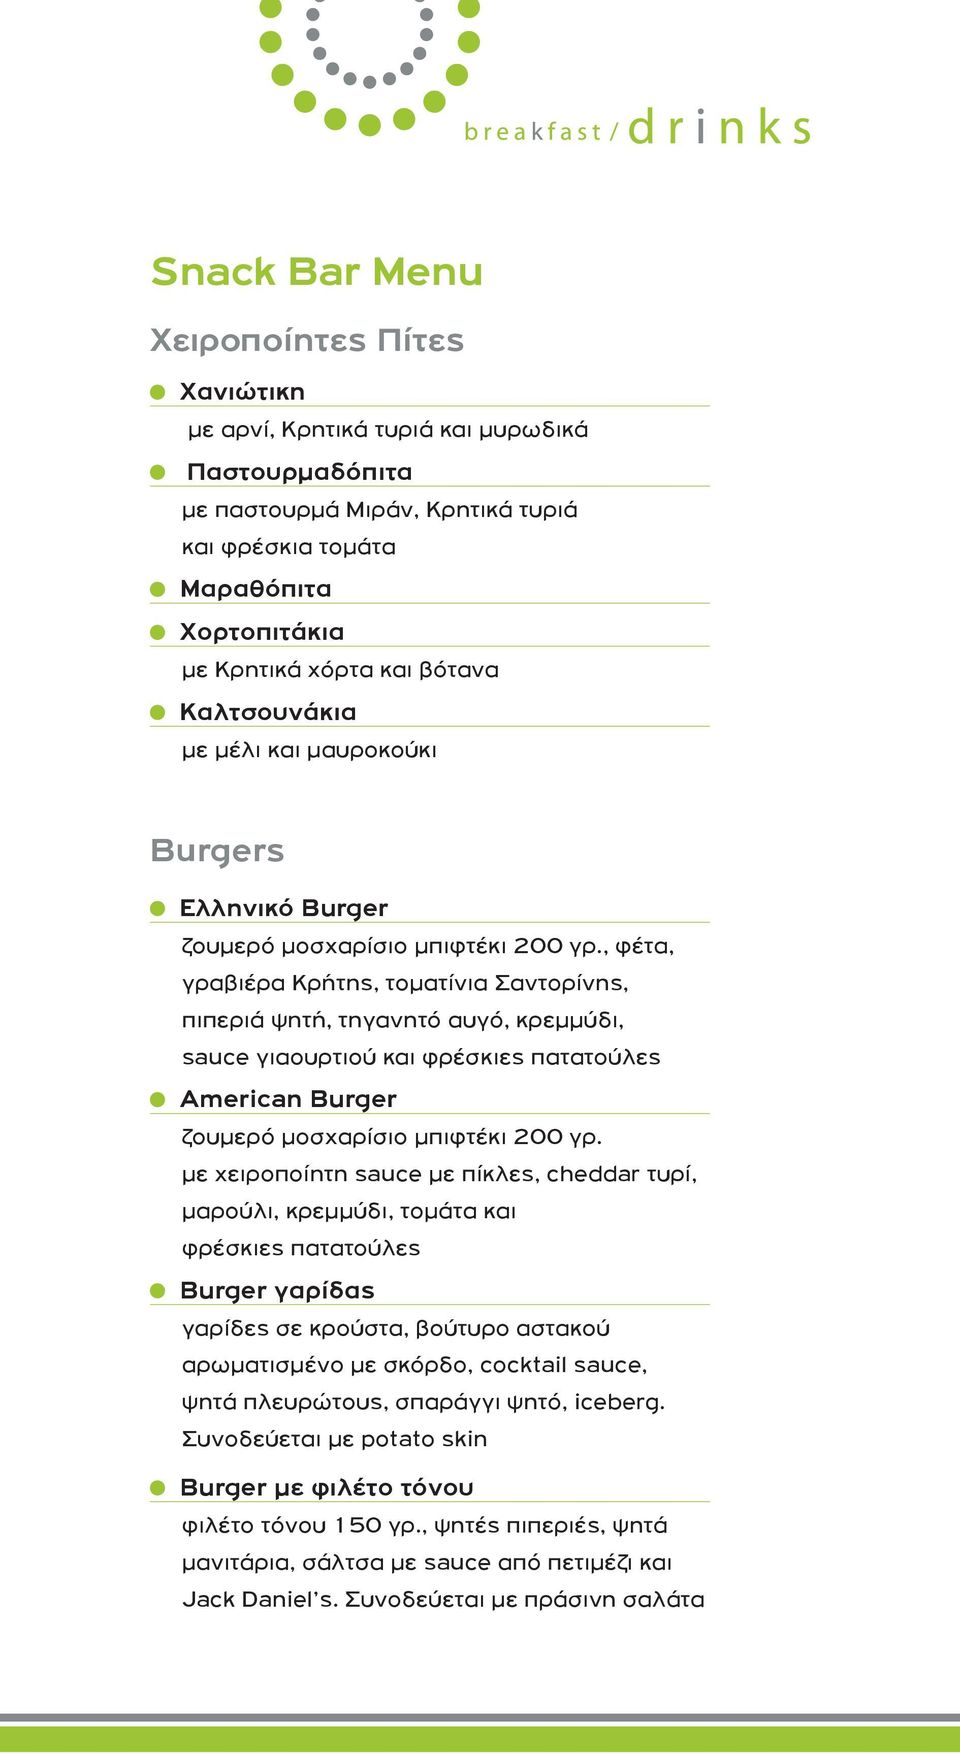 , φέτα, γραβιέρα Κρήτης, τοματίνια Σαντορίνης, πιπεριά ψητή, τηγανητό αυγό, κρεμμύδι, sauce γιαουρτιού και φρέσκιες πατατούλες American Burger ζουμερό μοσχαρίσιο μπιφτέκι 200 γρ.